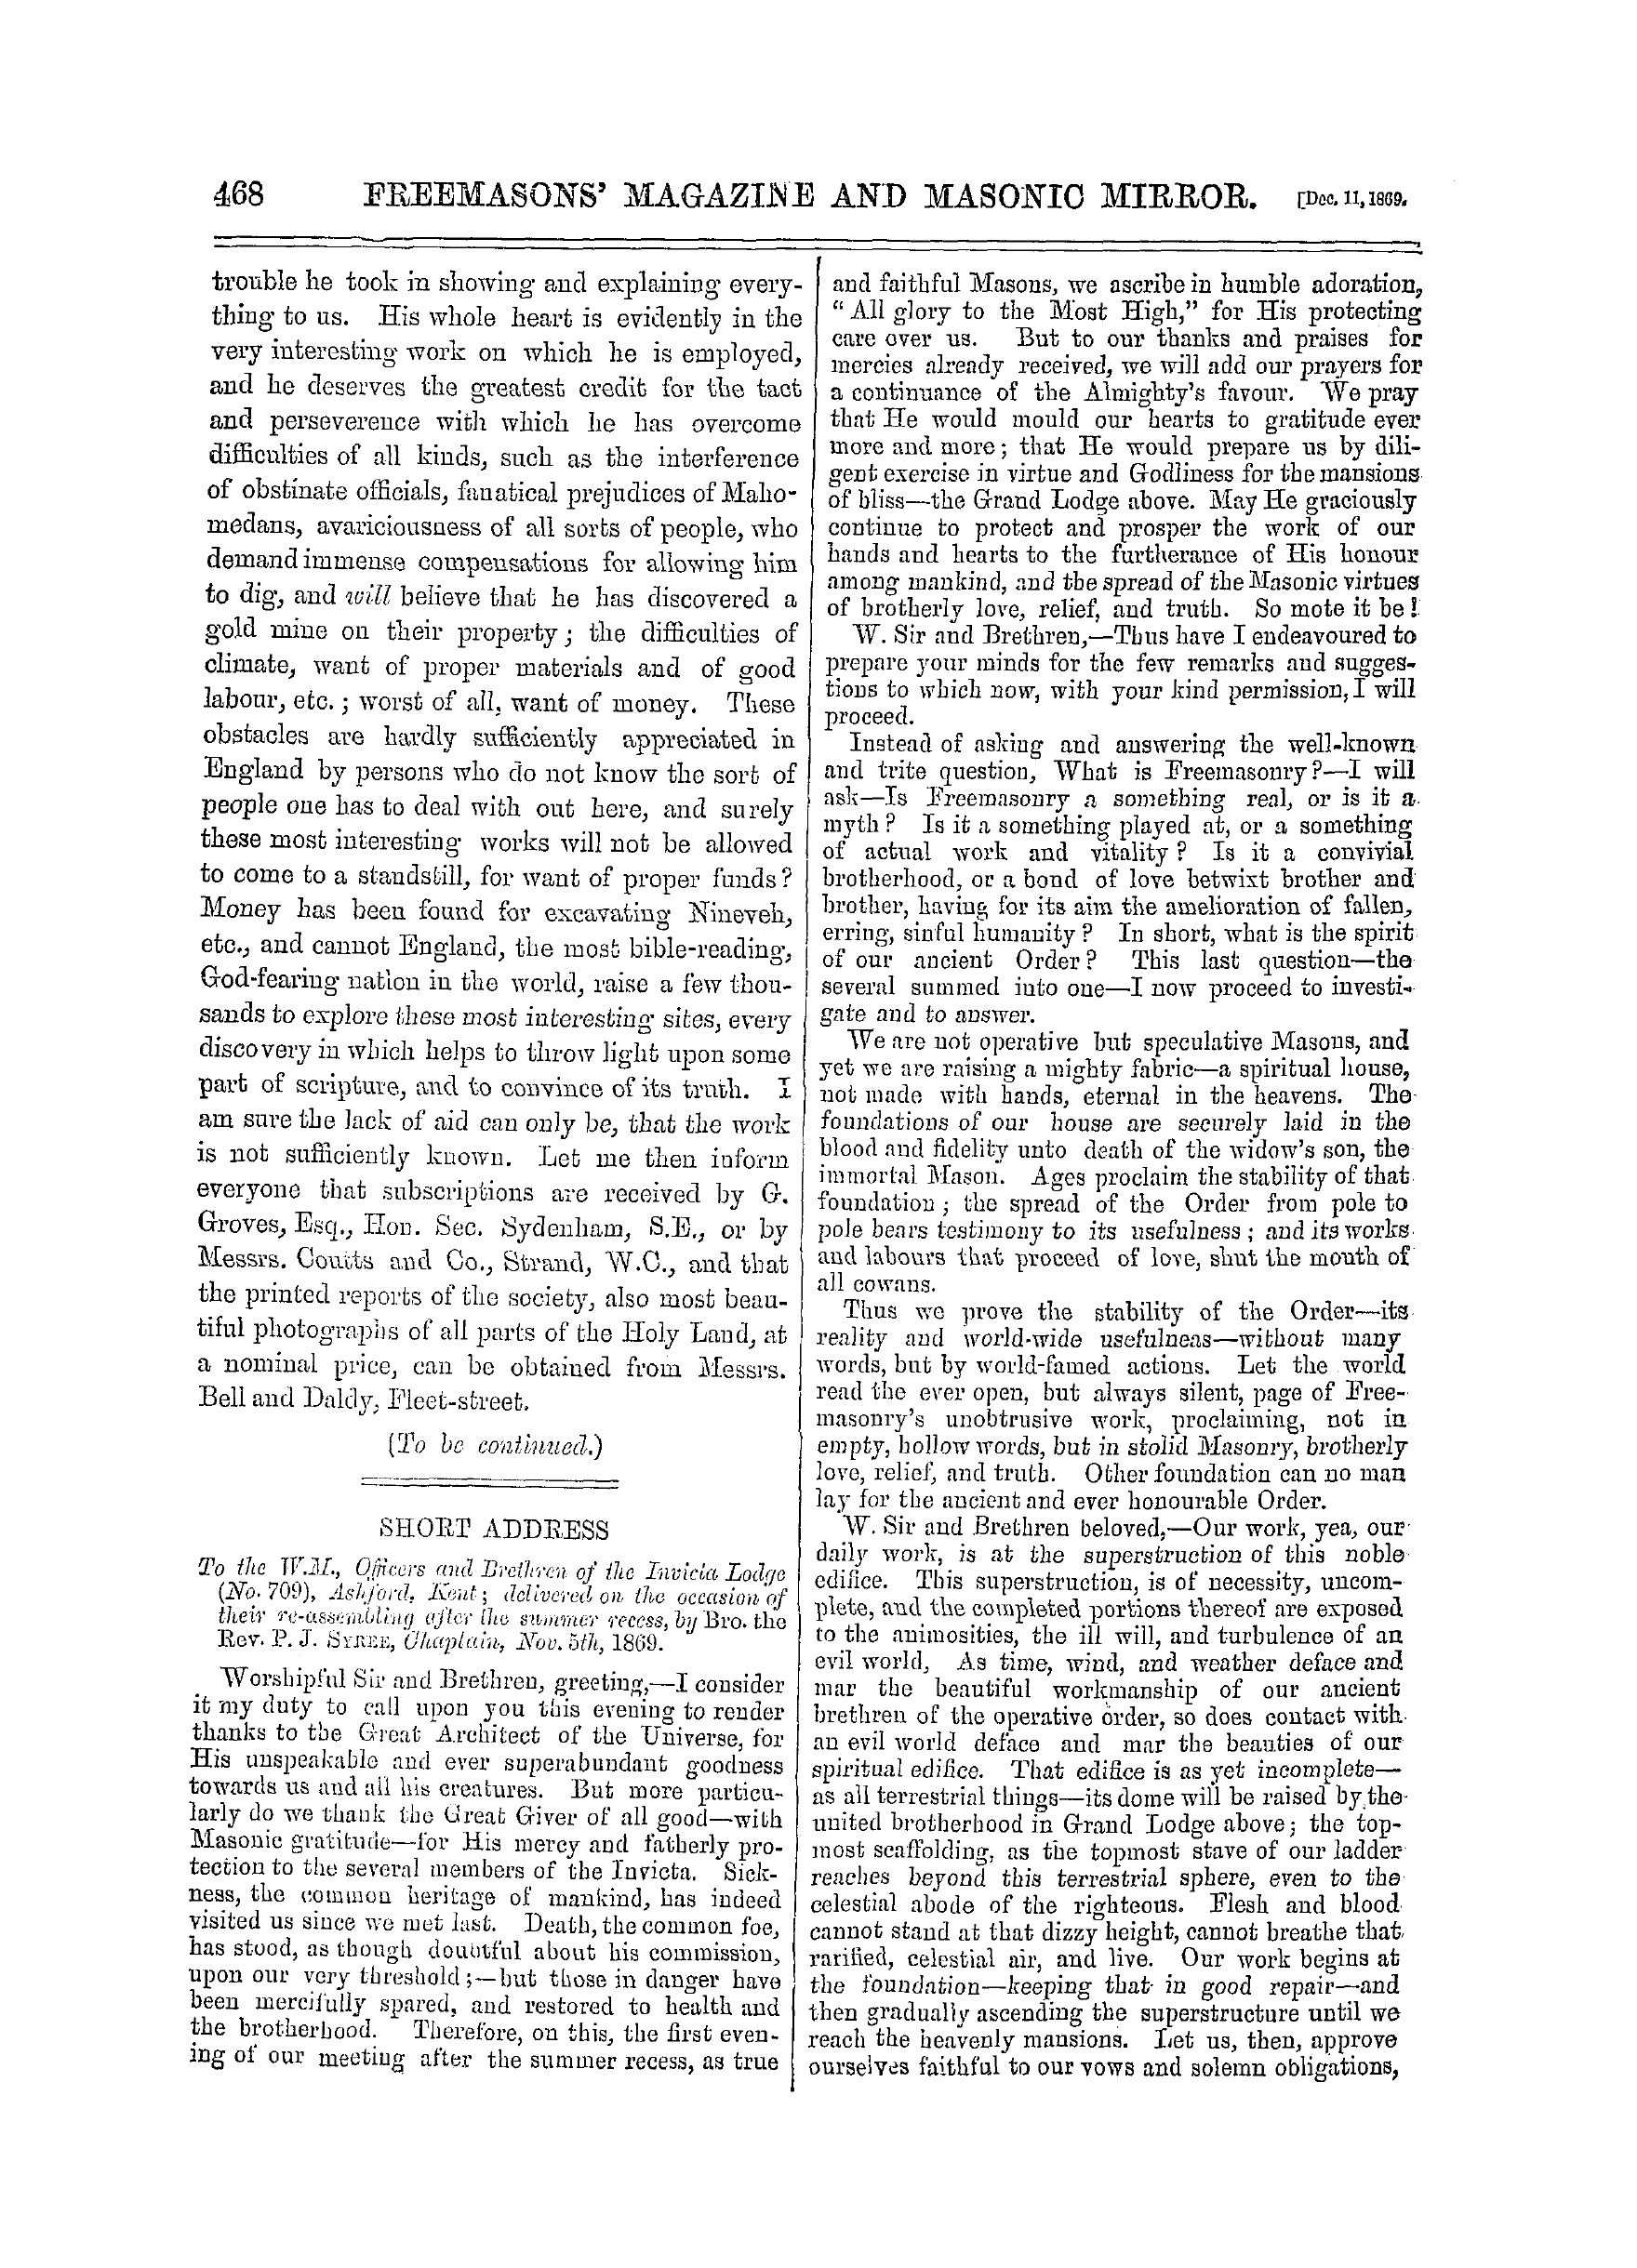 The Freemasons' Monthly Magazine: 1869-12-11 - Short Address